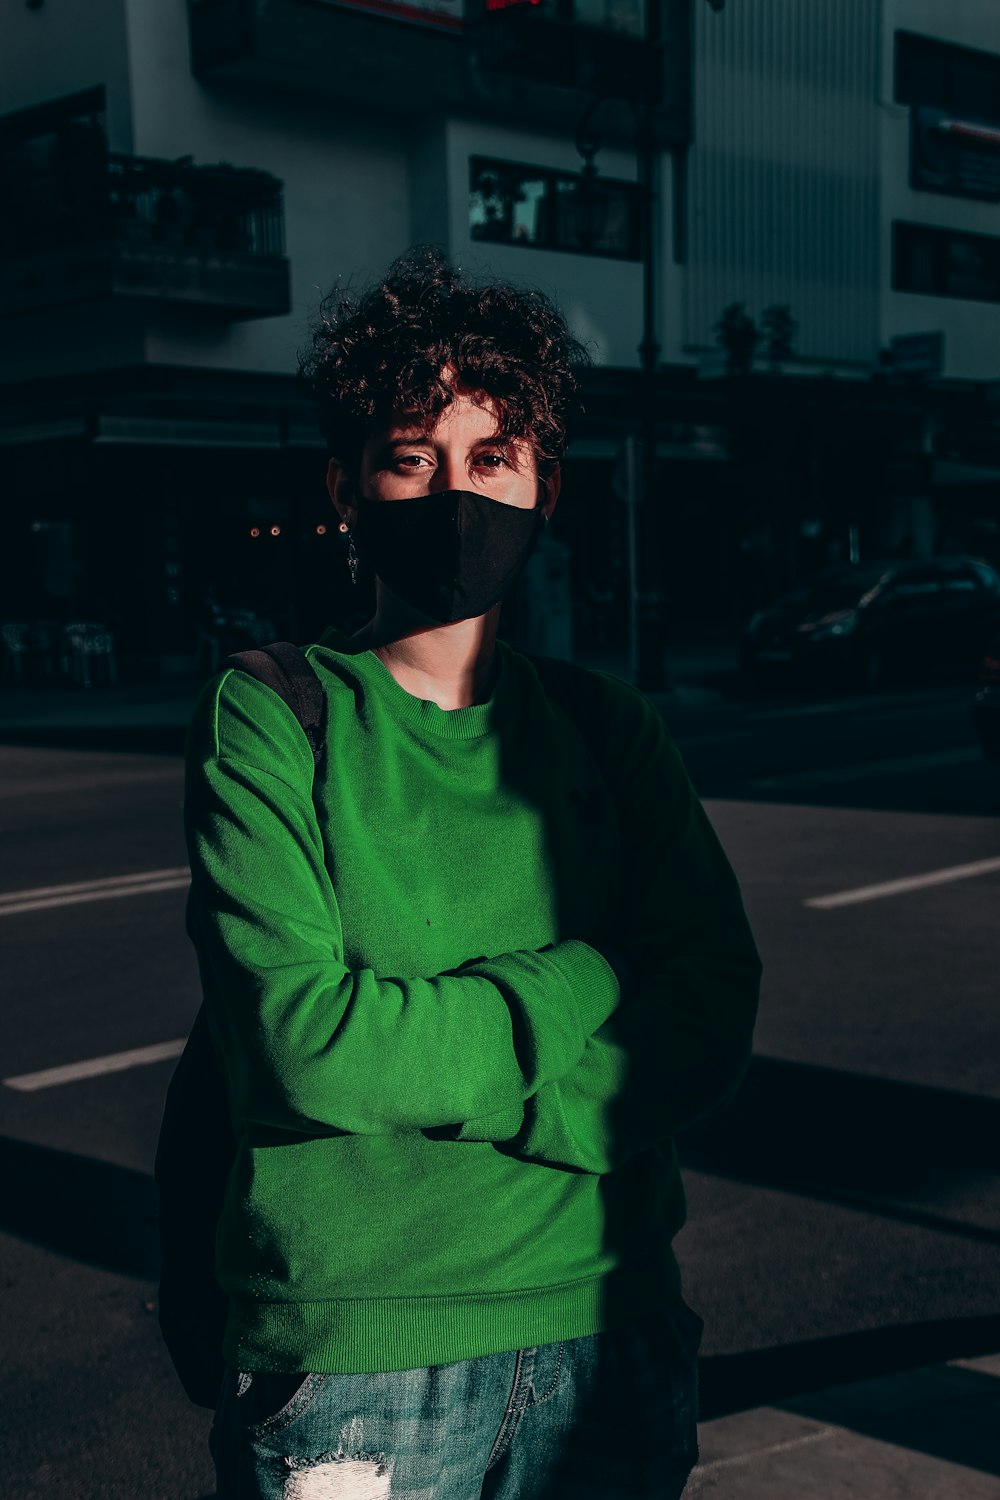 Mann in grünem Pullover mit schwarzer Maske steht nachts auf dem Bürgersteig